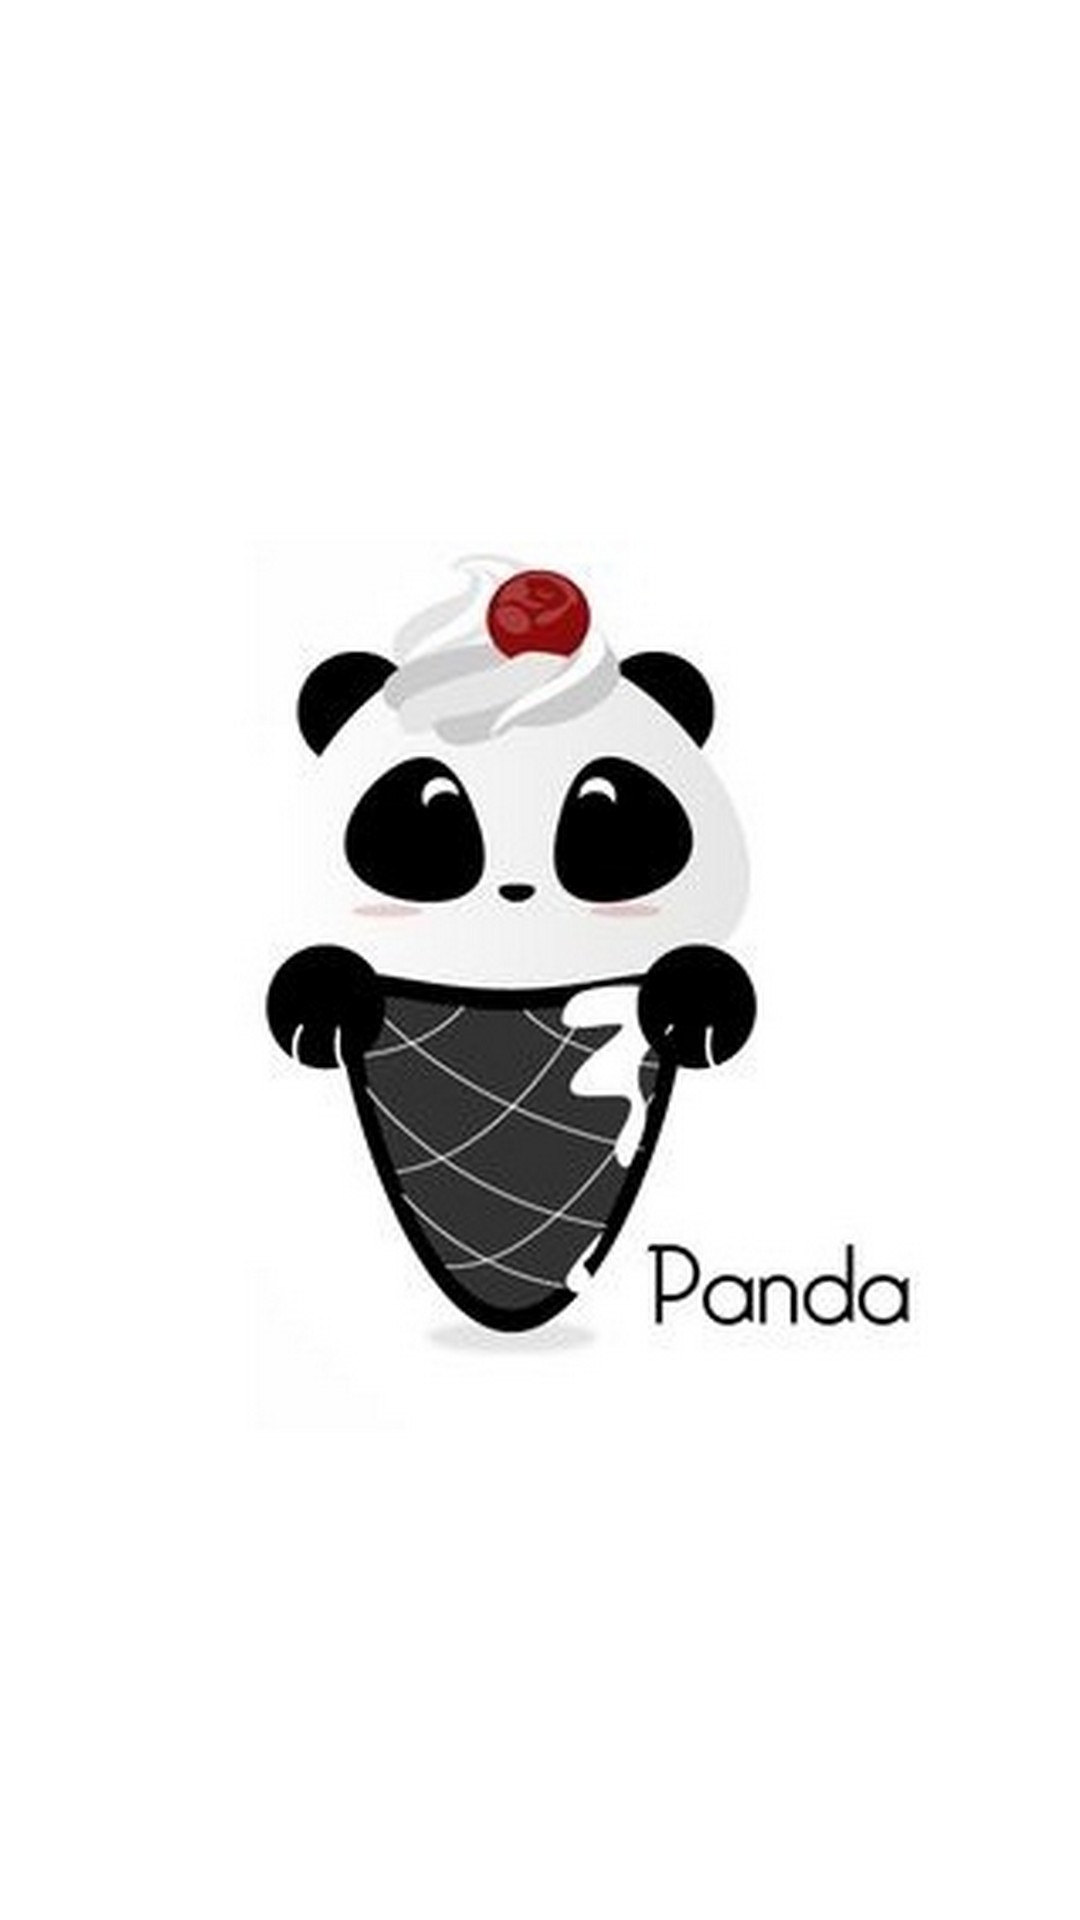 Cute Panda Drawing iPhone Wallpaper